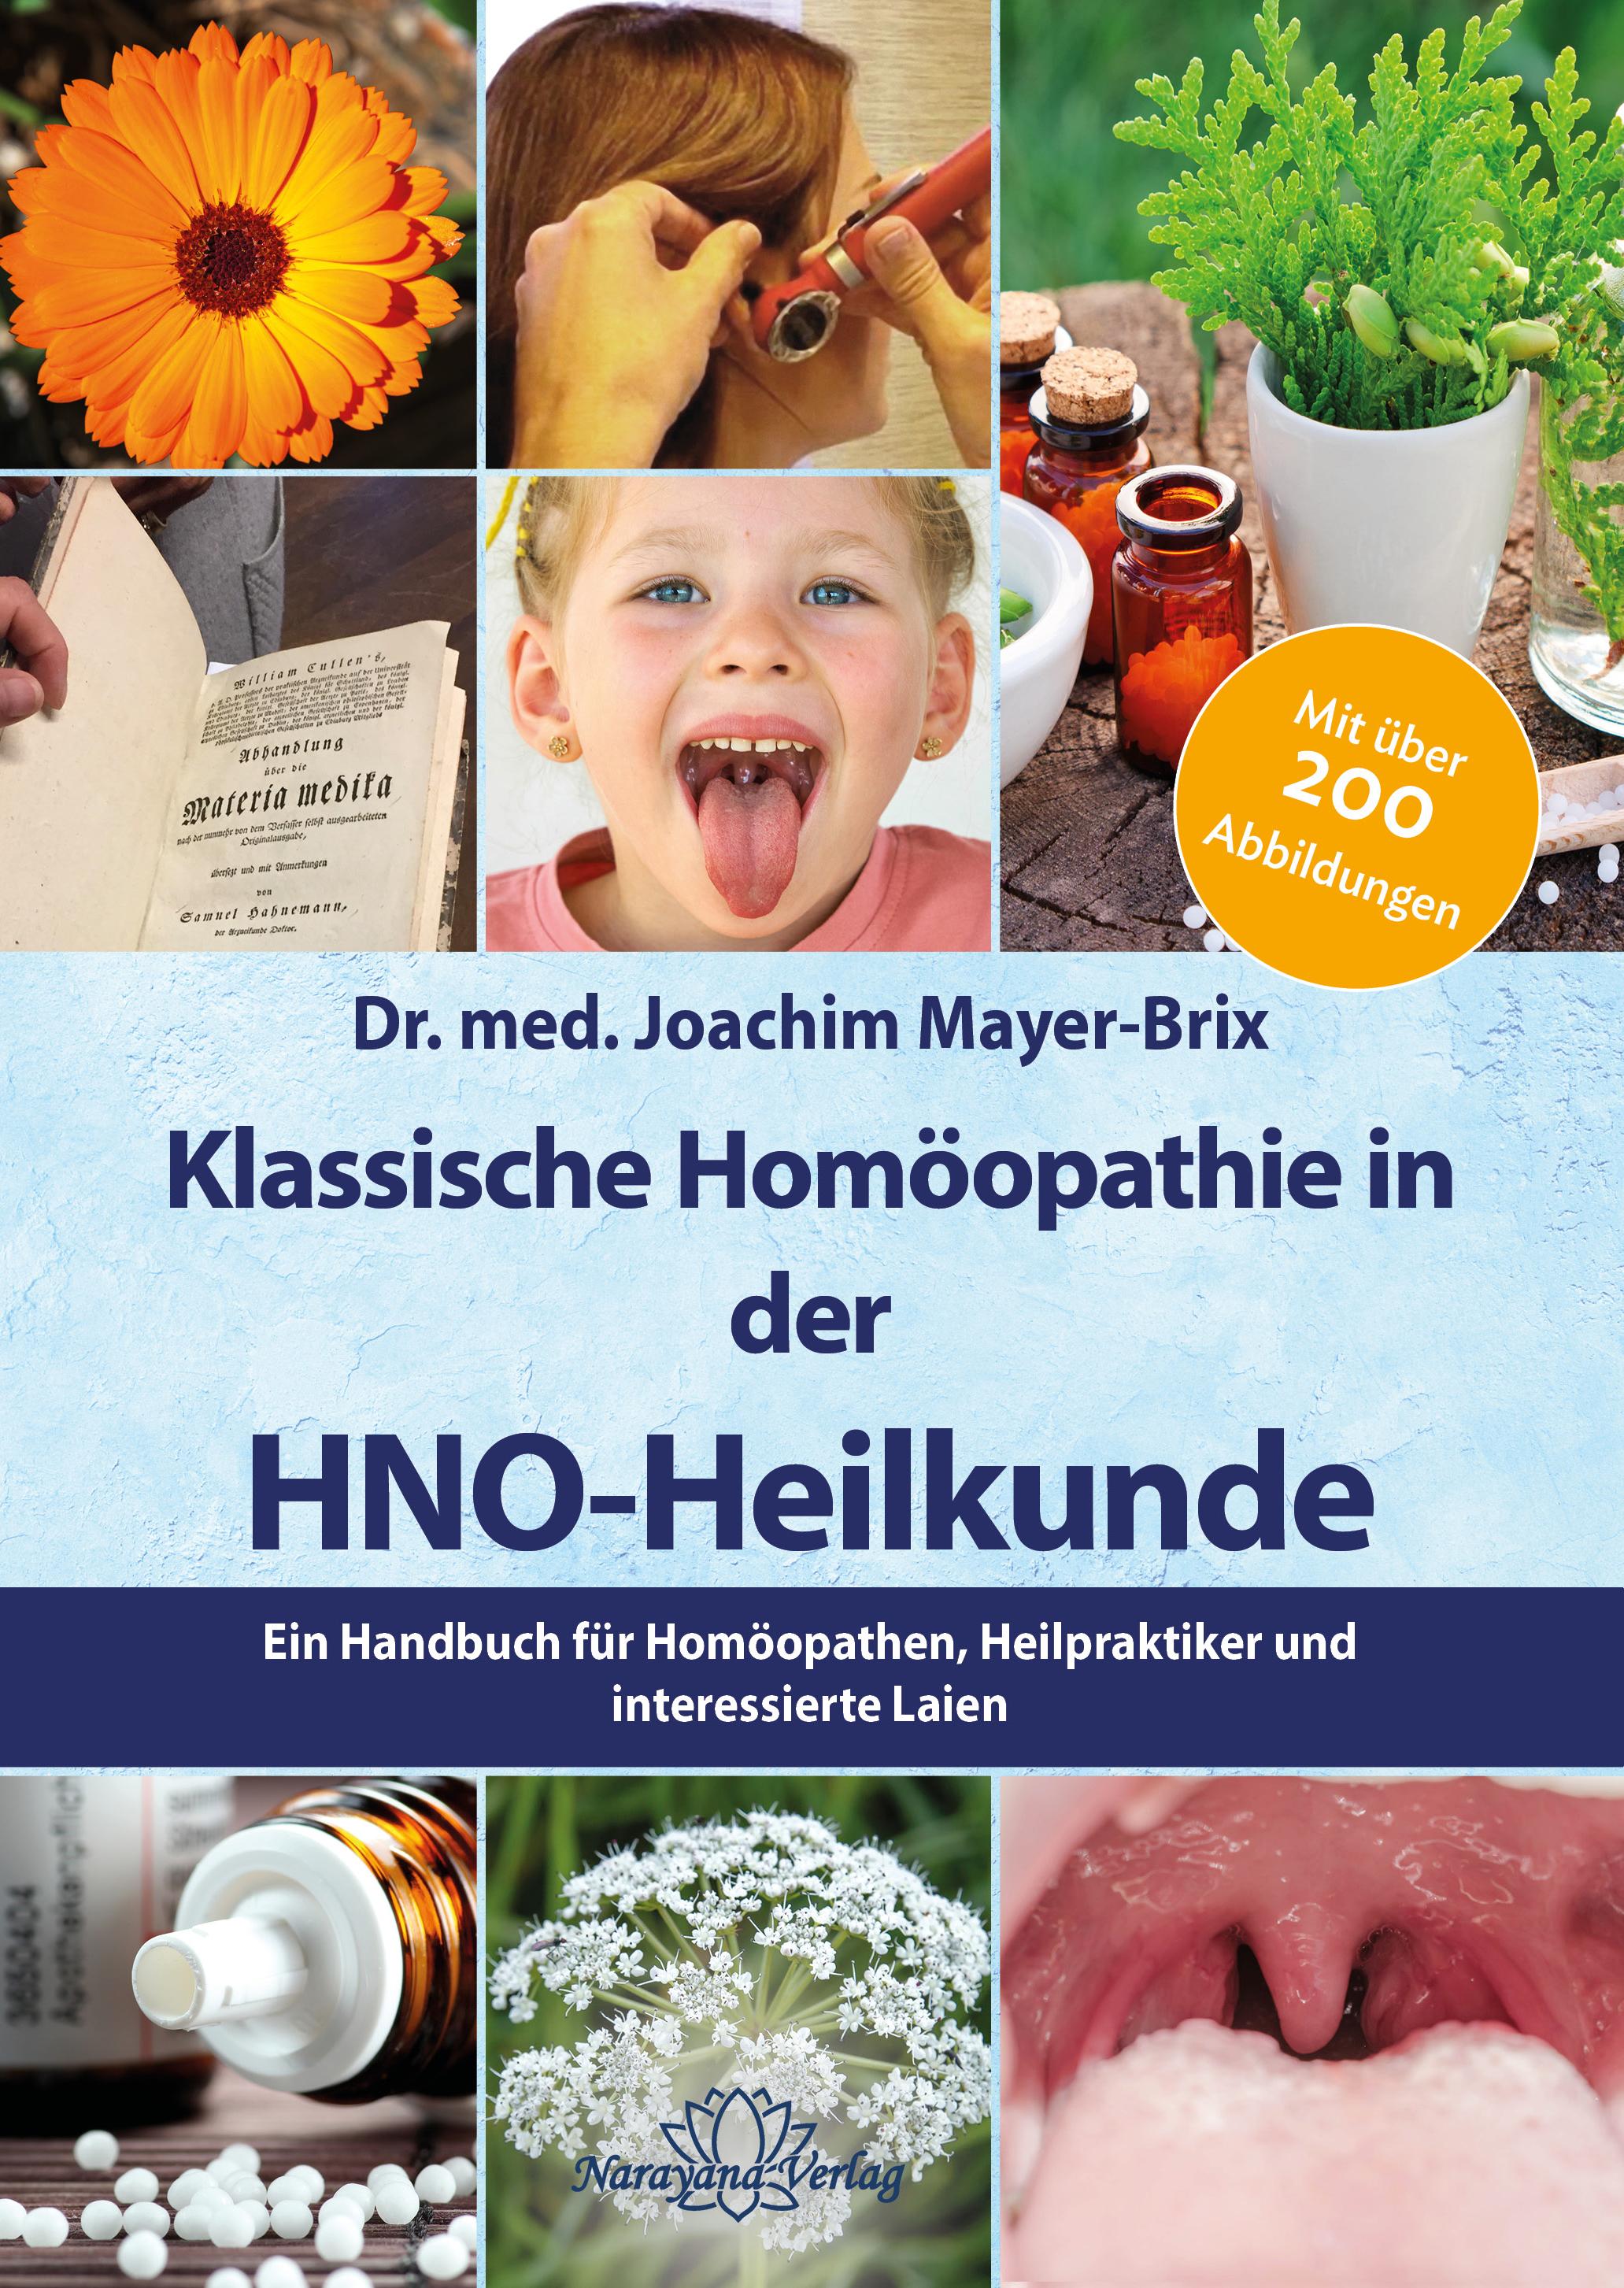 Klassische Homöopathie in der HNO-Heilkunde Ein Handbuch für Homöopathen, Heilpraktiker und interessierte Laien